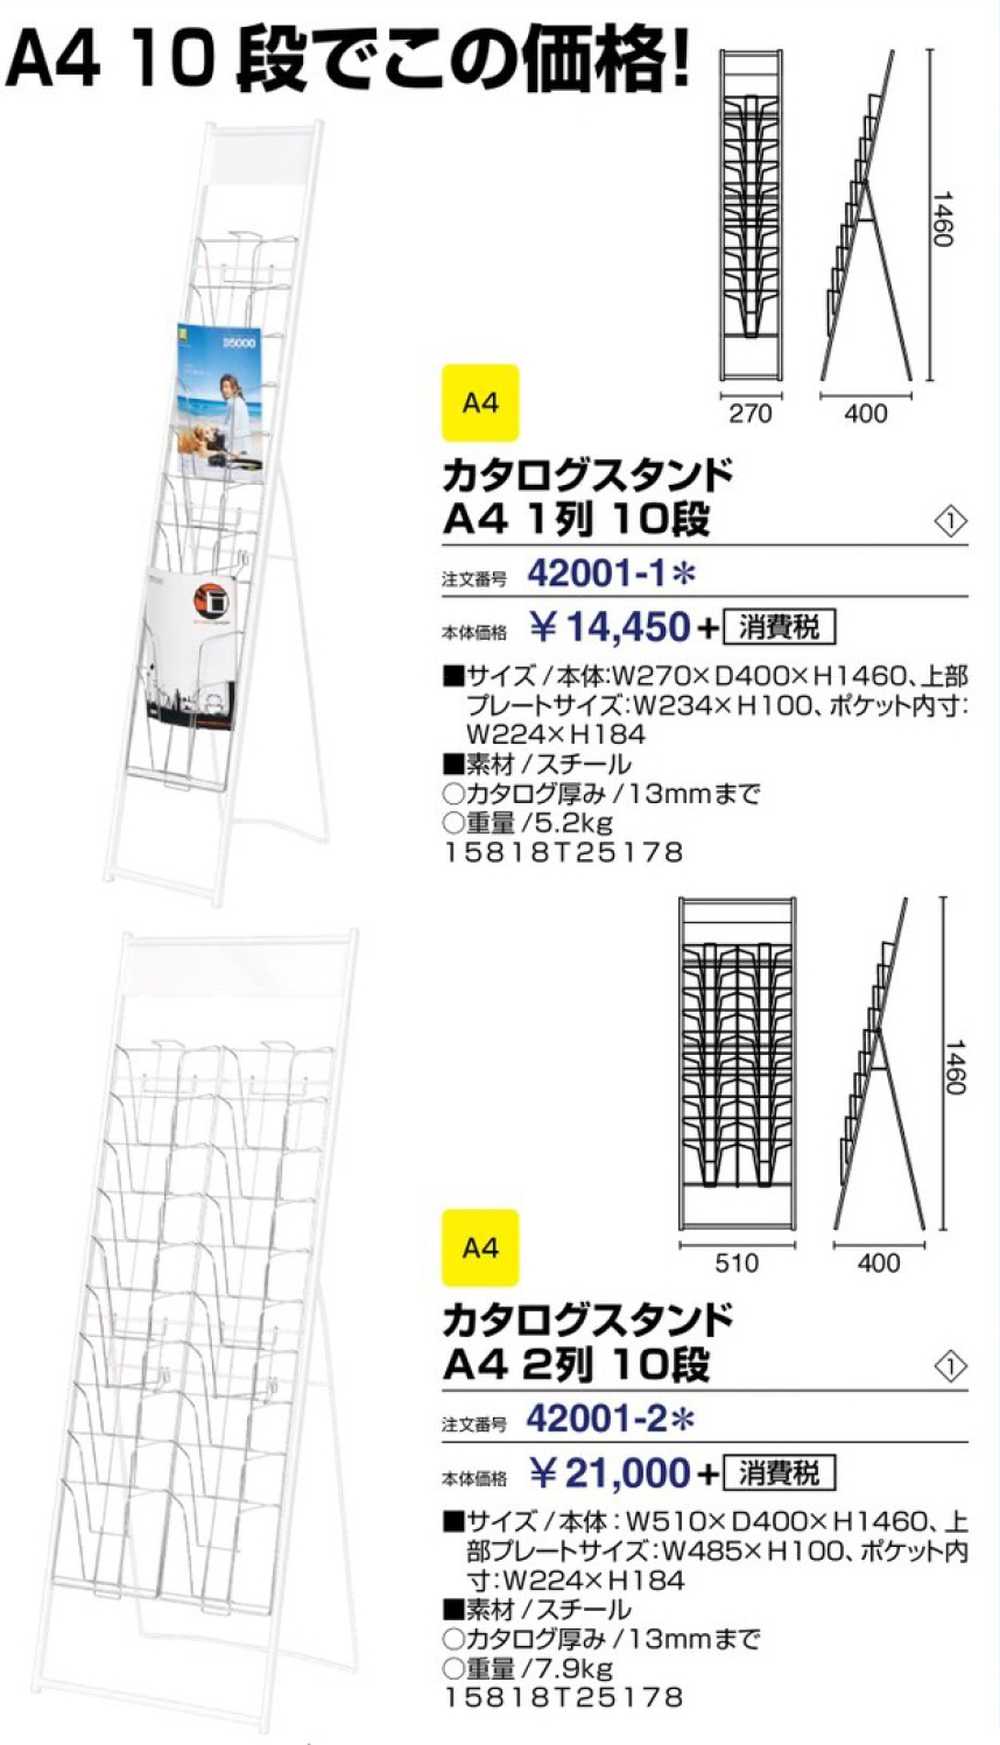 イワサキ パンフレットスタンド 2列10段 A4サイズ TZR-PSN220LG 1台